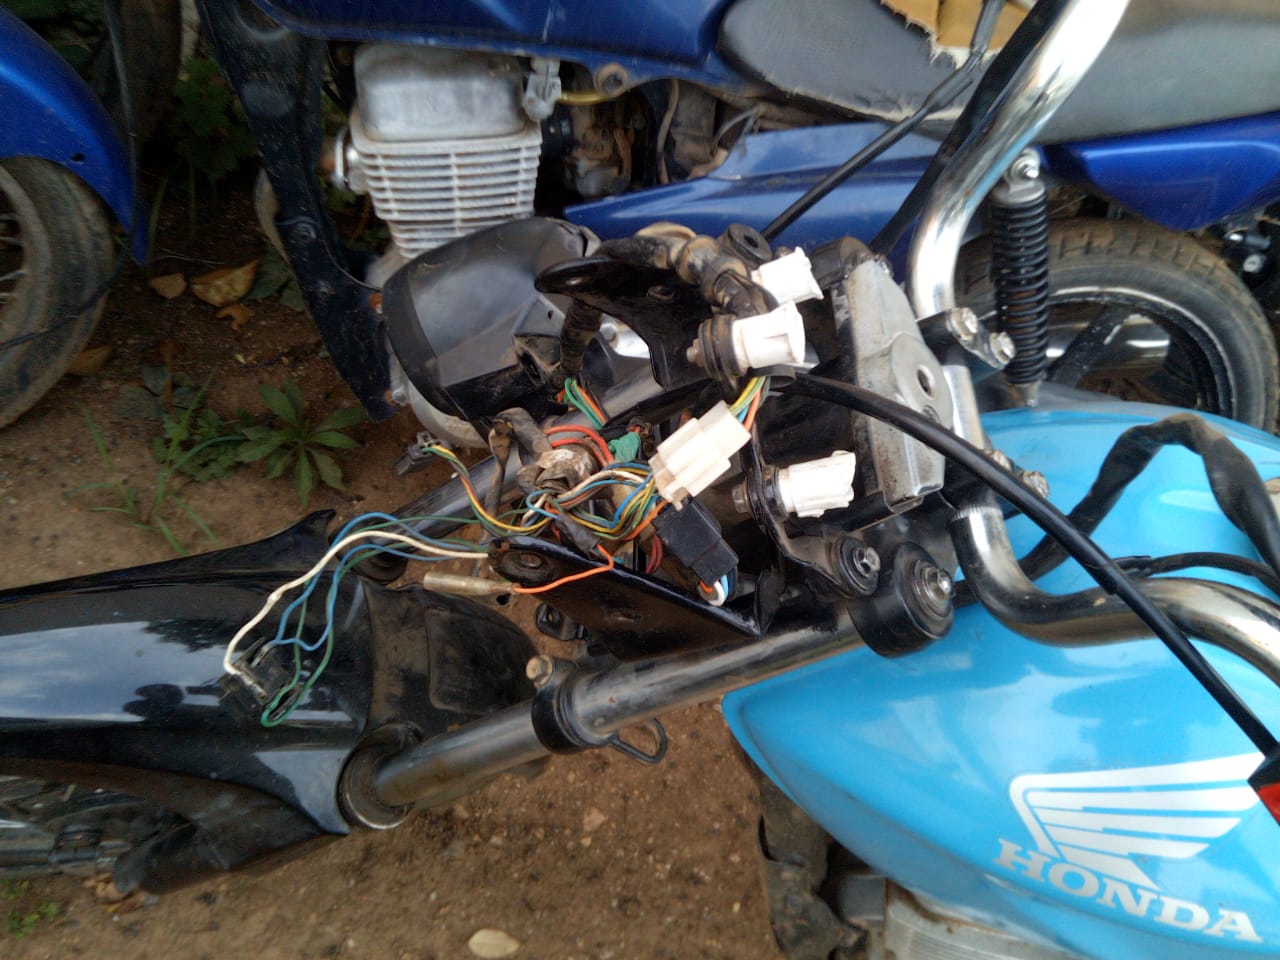 Imagem referente a Moto furtada em 2017 é recuperada pela Polícia Civil que localiza outros veículos